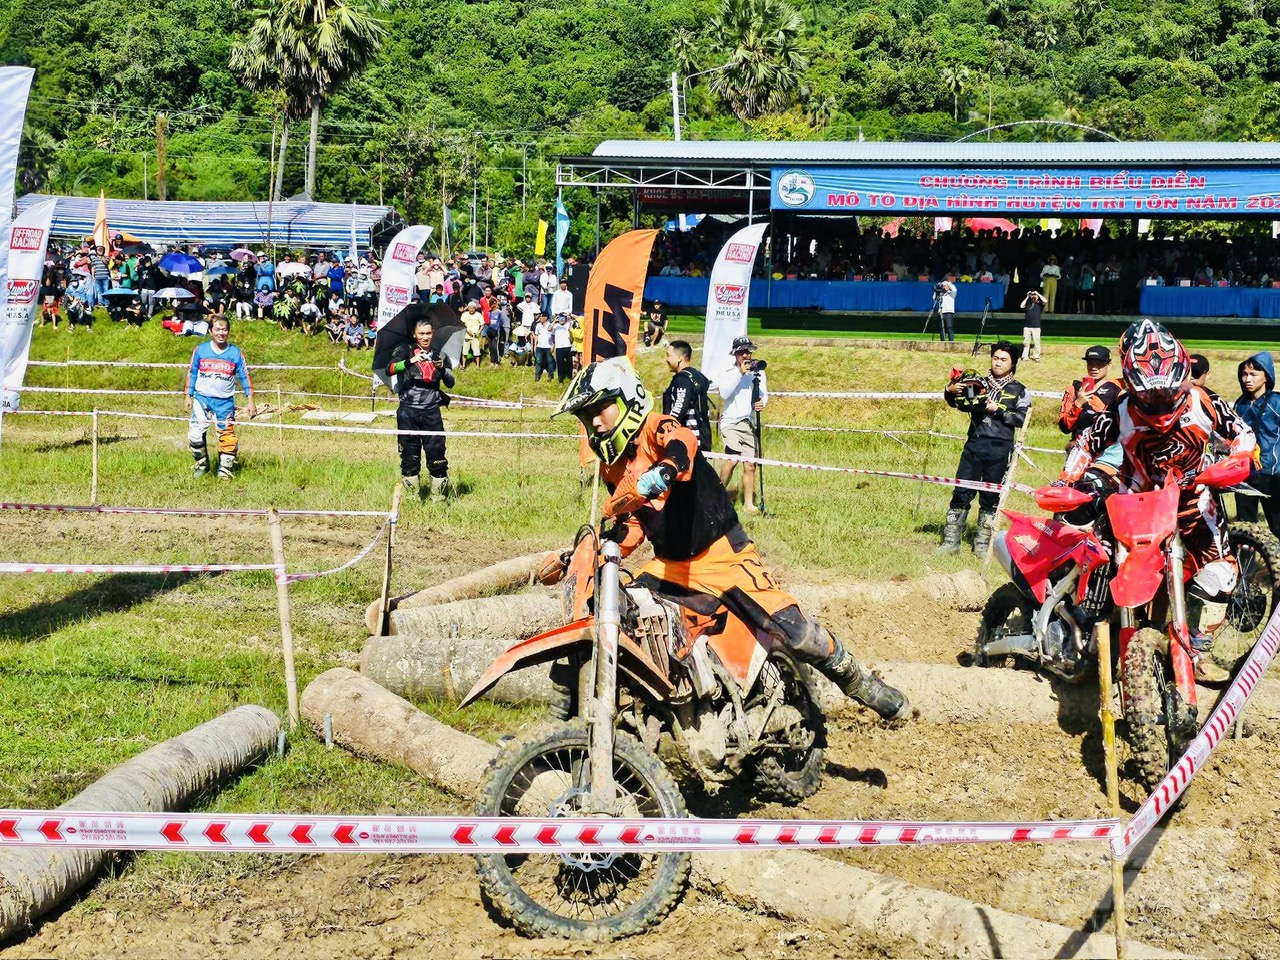 Sự kiện thể thao này nhằm tạo thêm sân chơi mới lạ, phục vụ nhu cầu vui chơi giải trí của người dân trong và ngoài huyện; chào đón lễ Sene Dolta của đồng bào dân tộc thiểu số Khmer. Ảnh: Lê Hoàng Vũ.